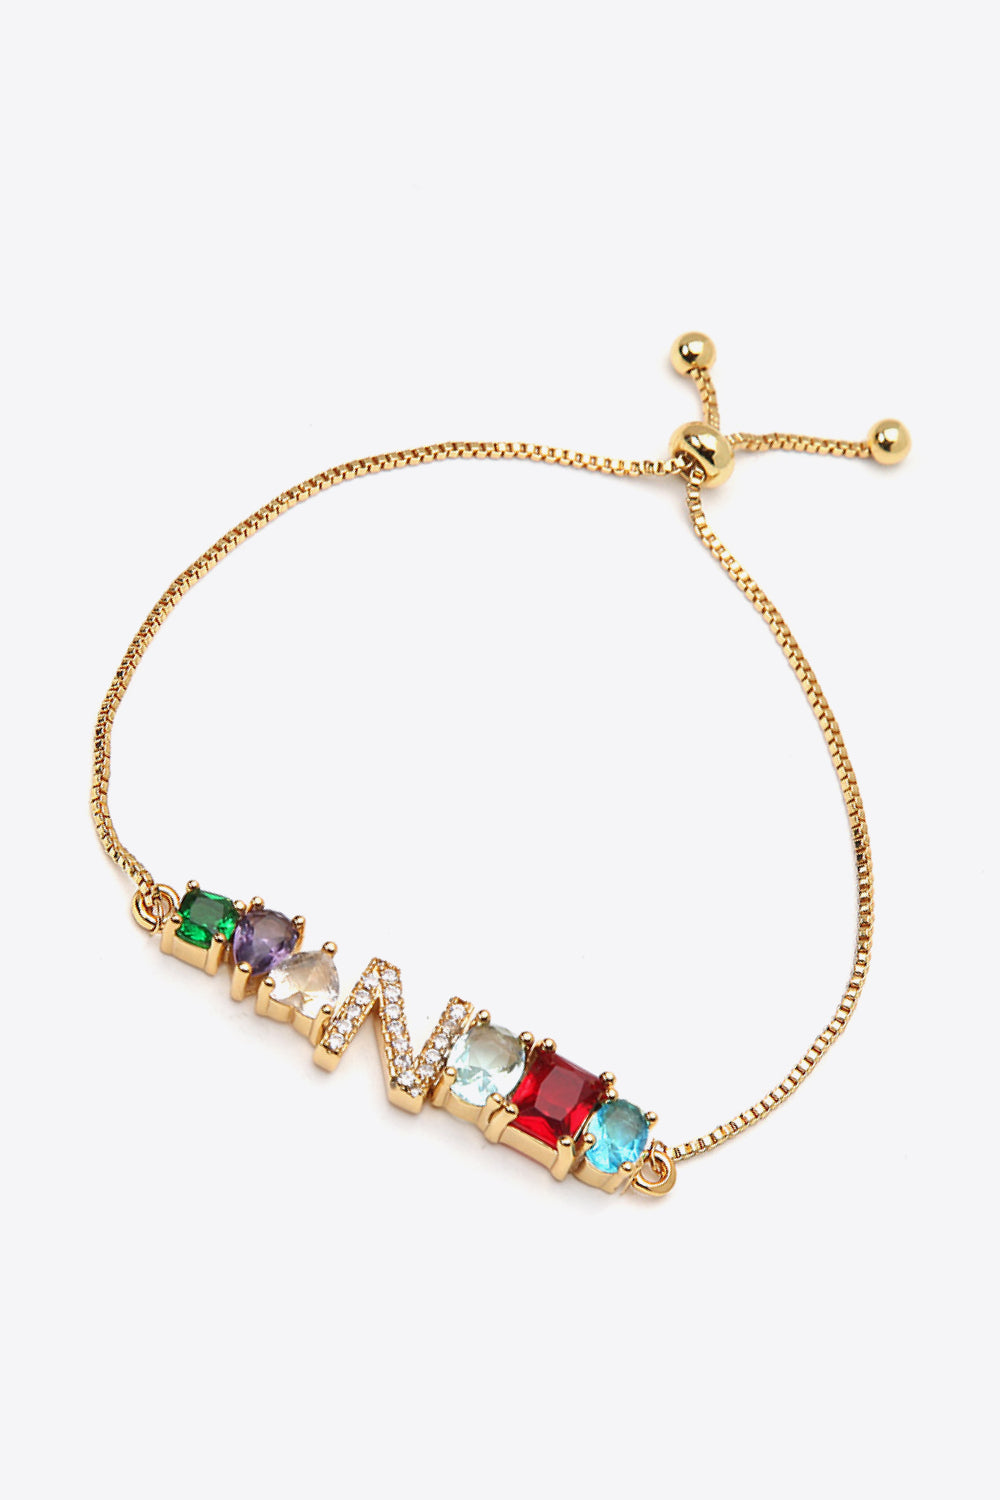 K to T Zircon Bracelet - Women’s Jewelry - Bracelets - 11 - 2024